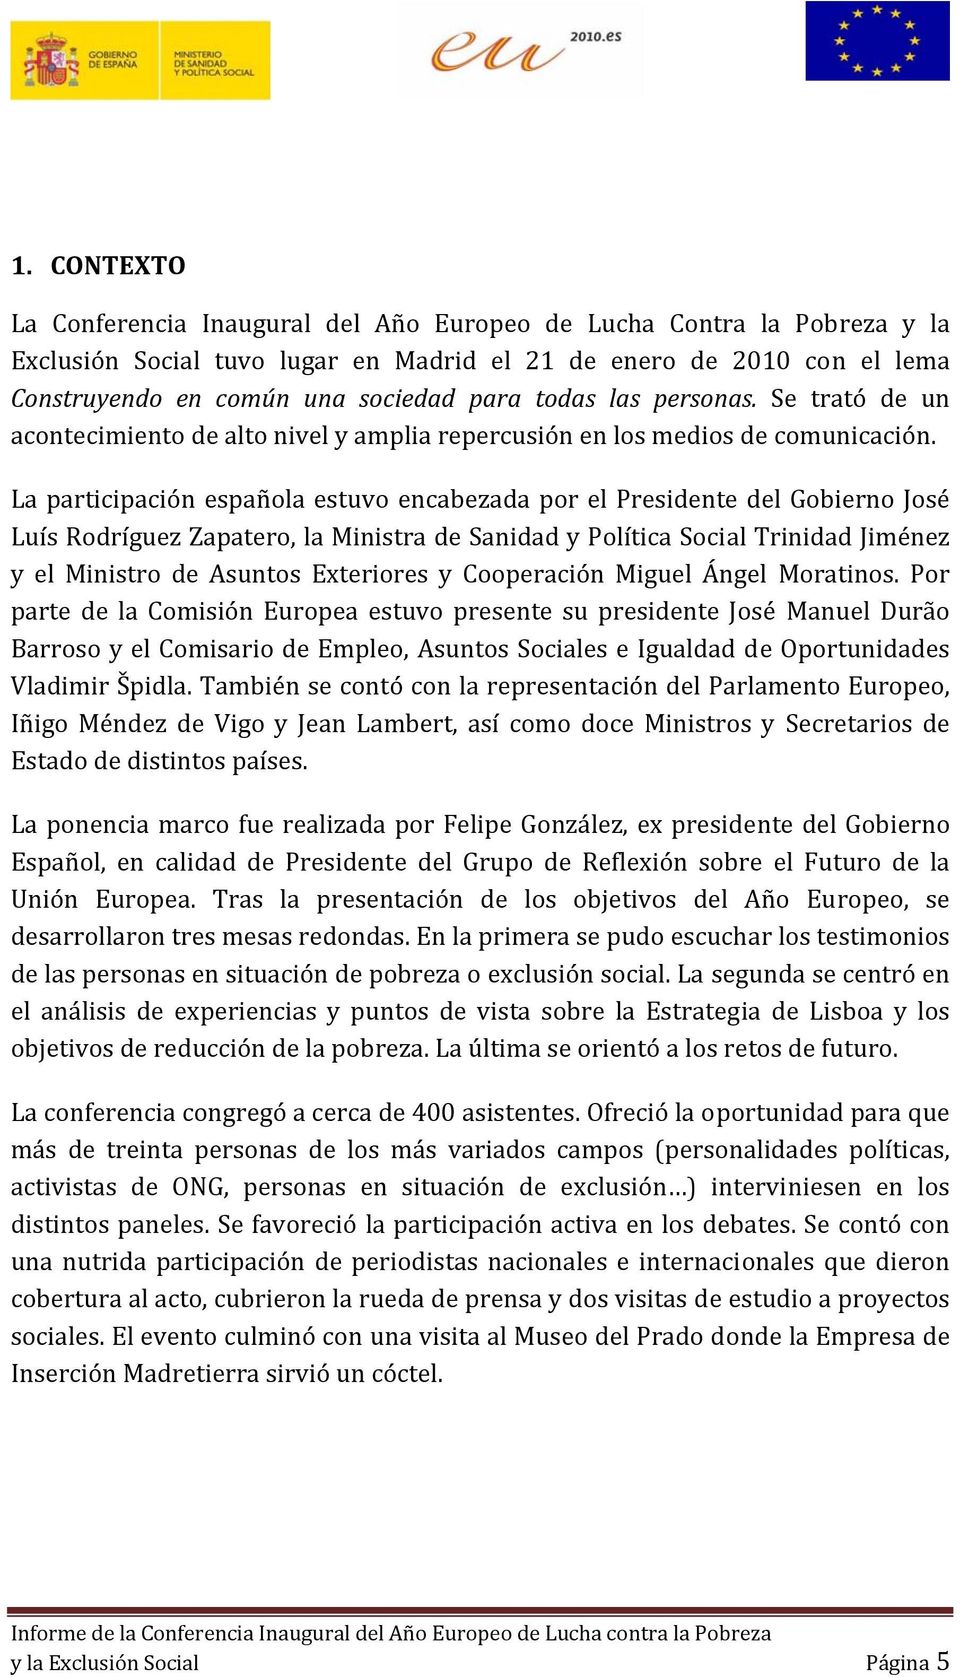 La participación española estuvo encabezada por el Presidente del Gobierno José Luís Rodríguez Zapatero, la Ministra de Sanidad y Política Social Trinidad Jiménez y el Ministro de Asuntos Exteriores